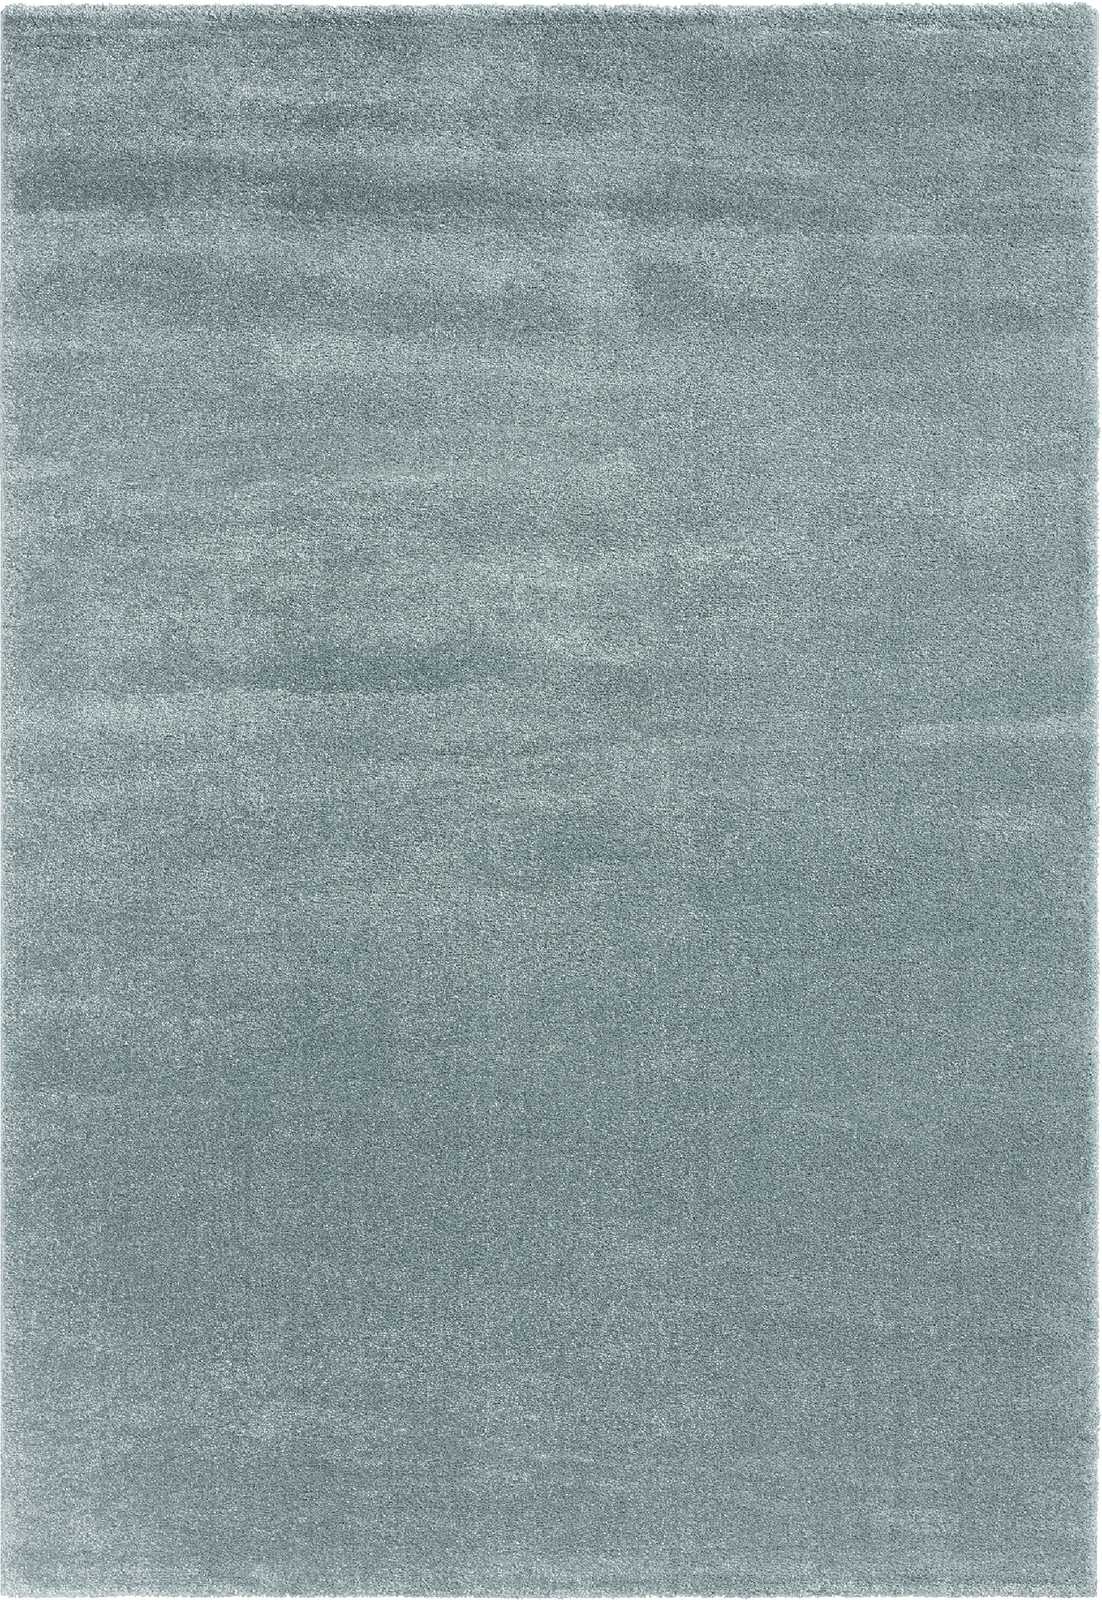             Eenvoudig kortpolig tapijt in blauw - 170 x 120 cm
        